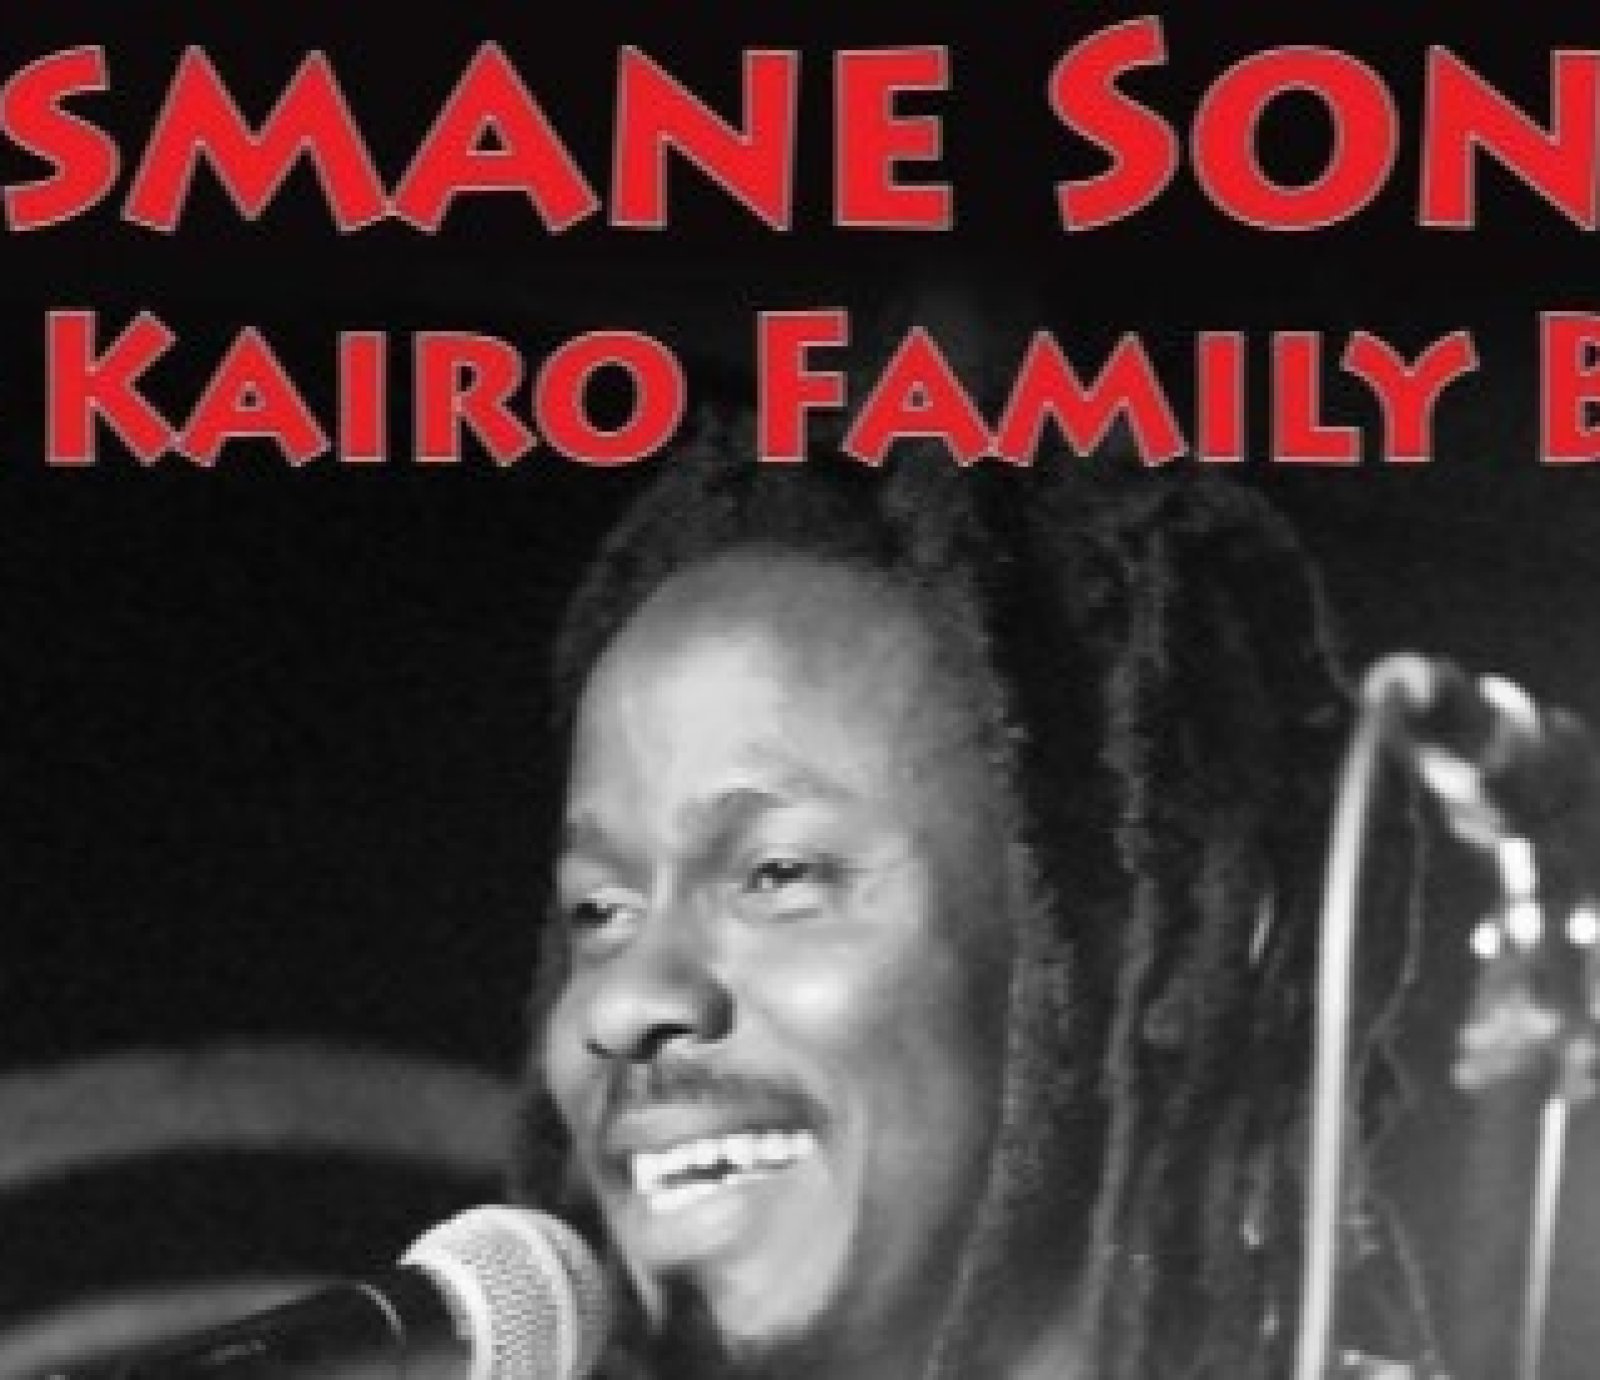 Ousmane Sonko & Kairo Family Band